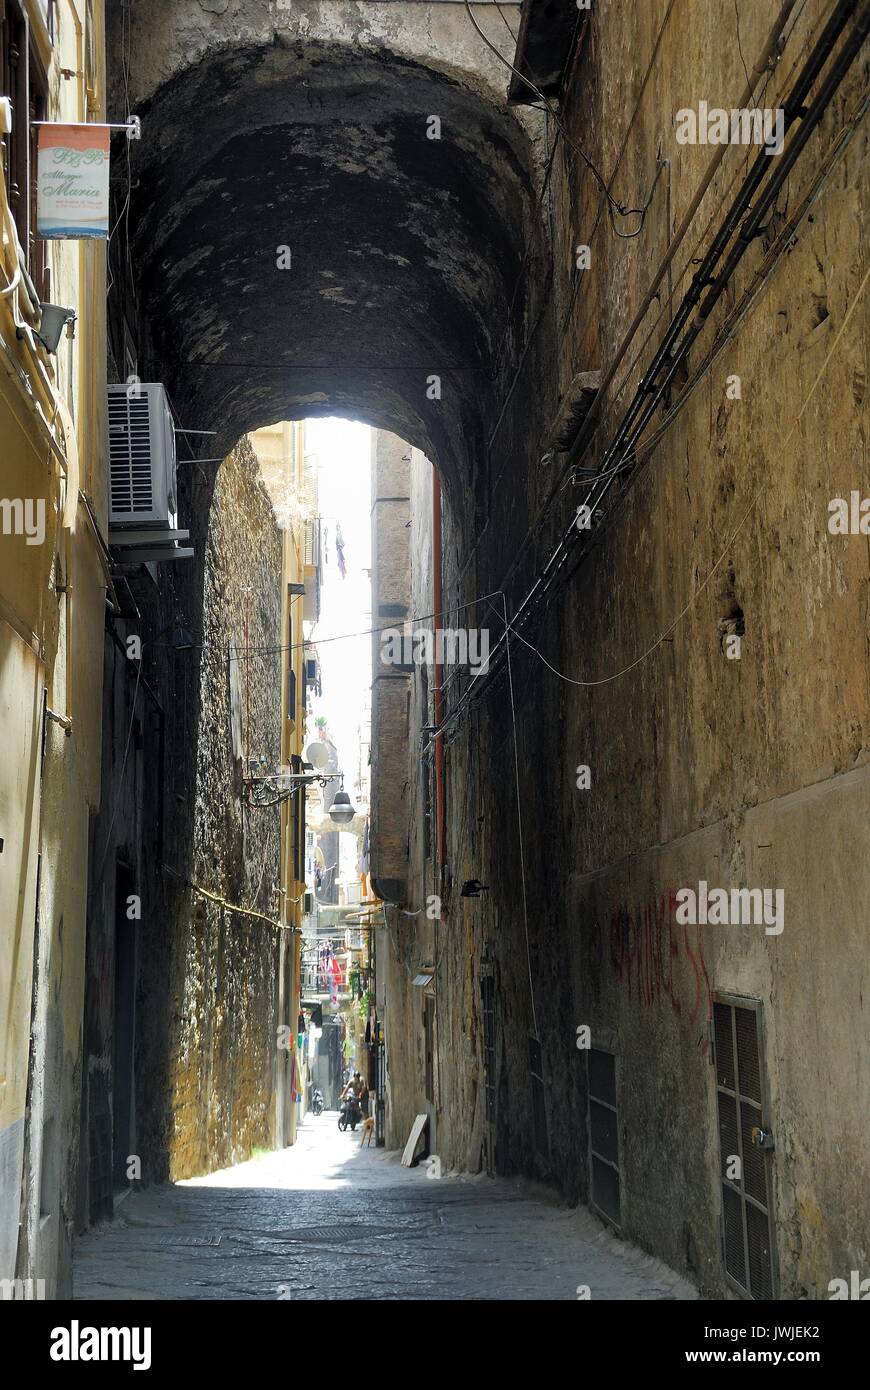 Naples historic center. A narrow alley along Via San Biagio dei Librai. Stock Photo